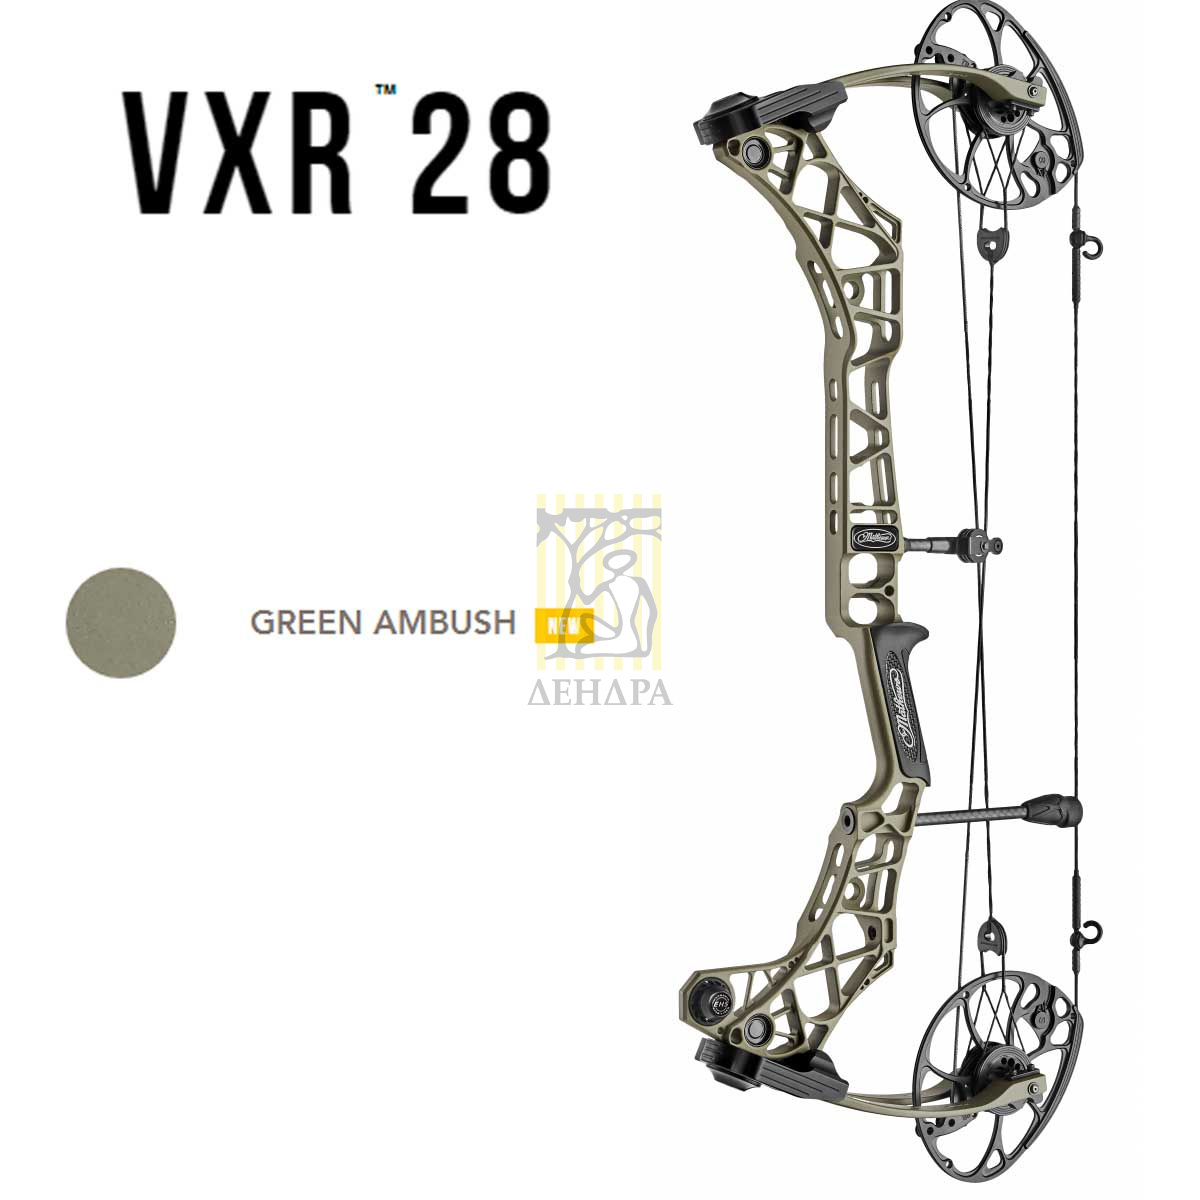 Лук блочный VXR28, начальная скорость 344 фут в сек, расстояние между осями 30", база 6", сила 60 lb